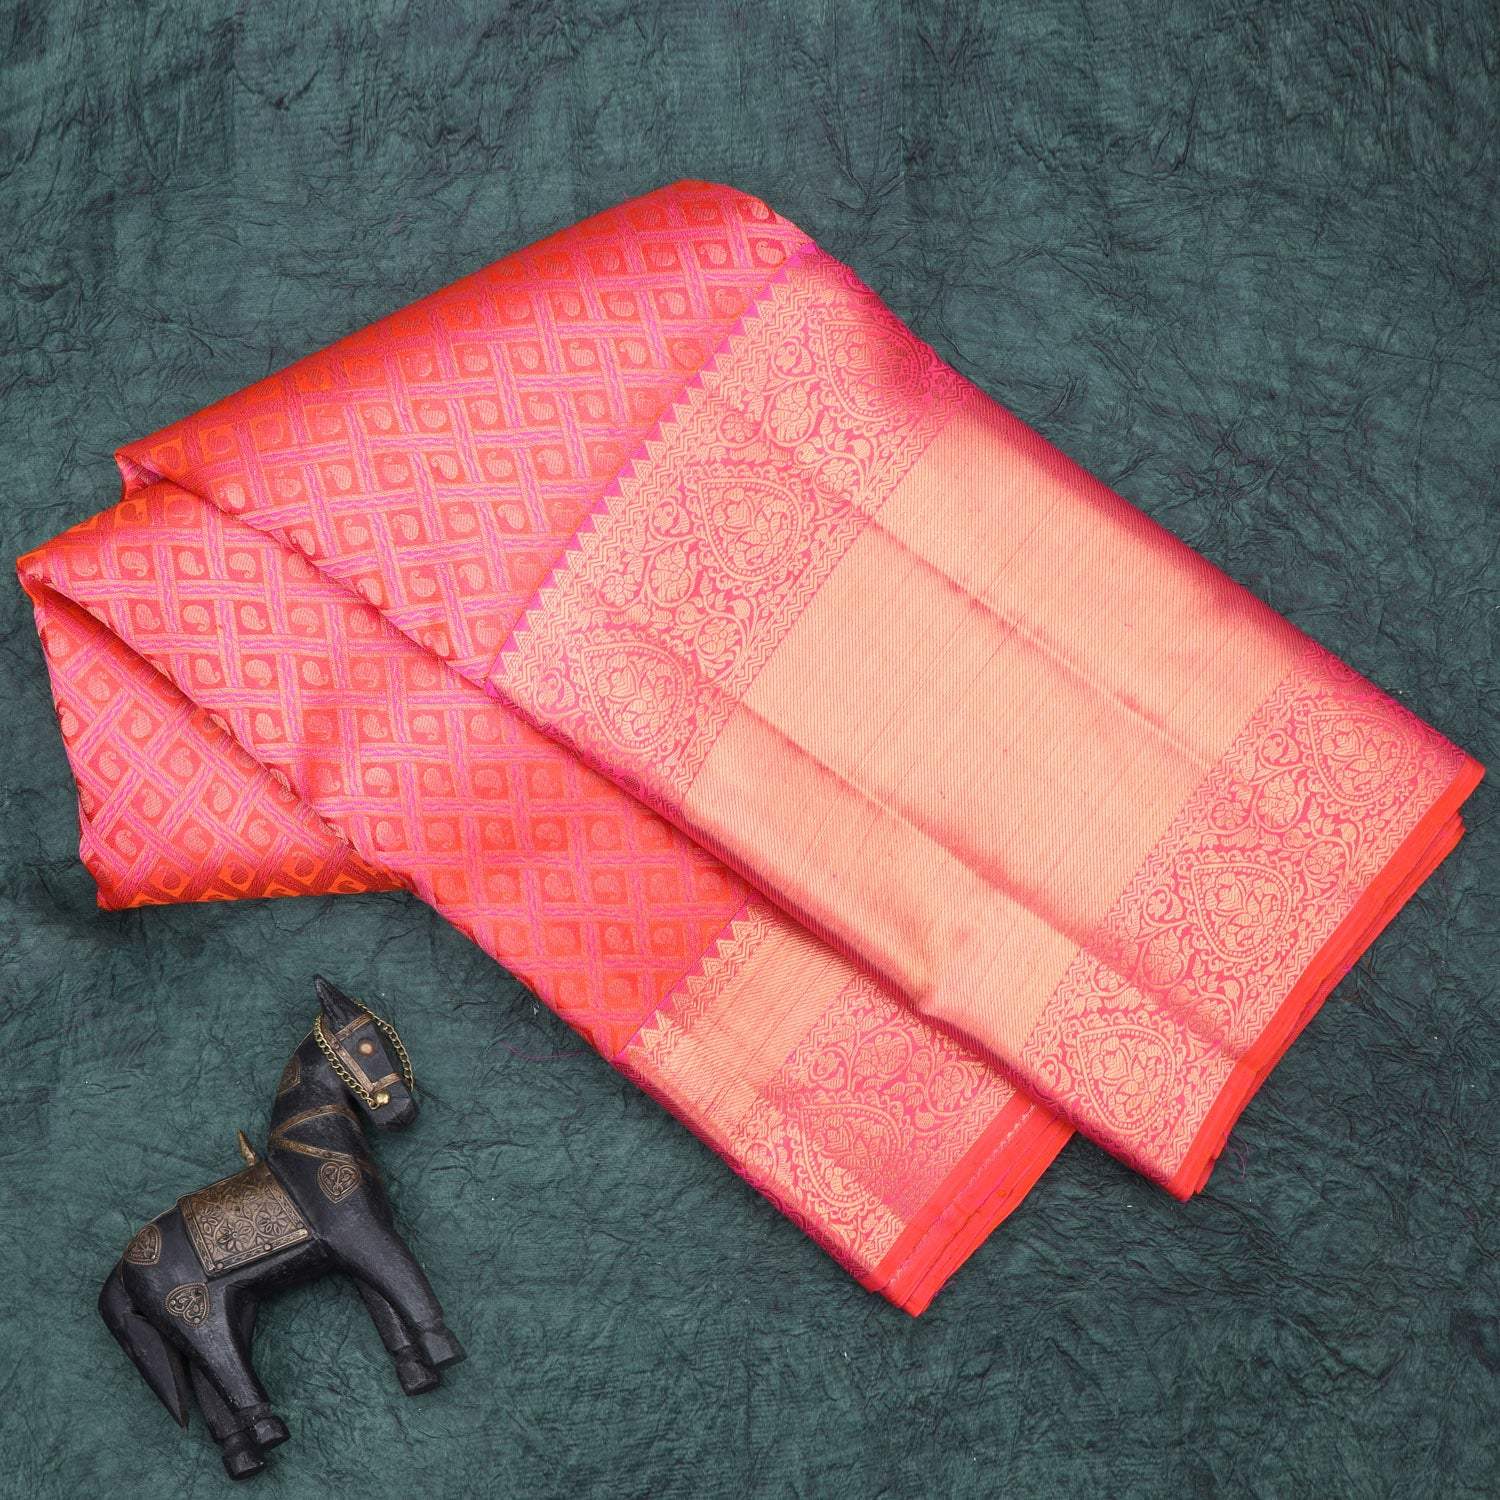 Vibrant Red Kanjivaram Silk Saree With Paisley Motif In Checks - Singhania's